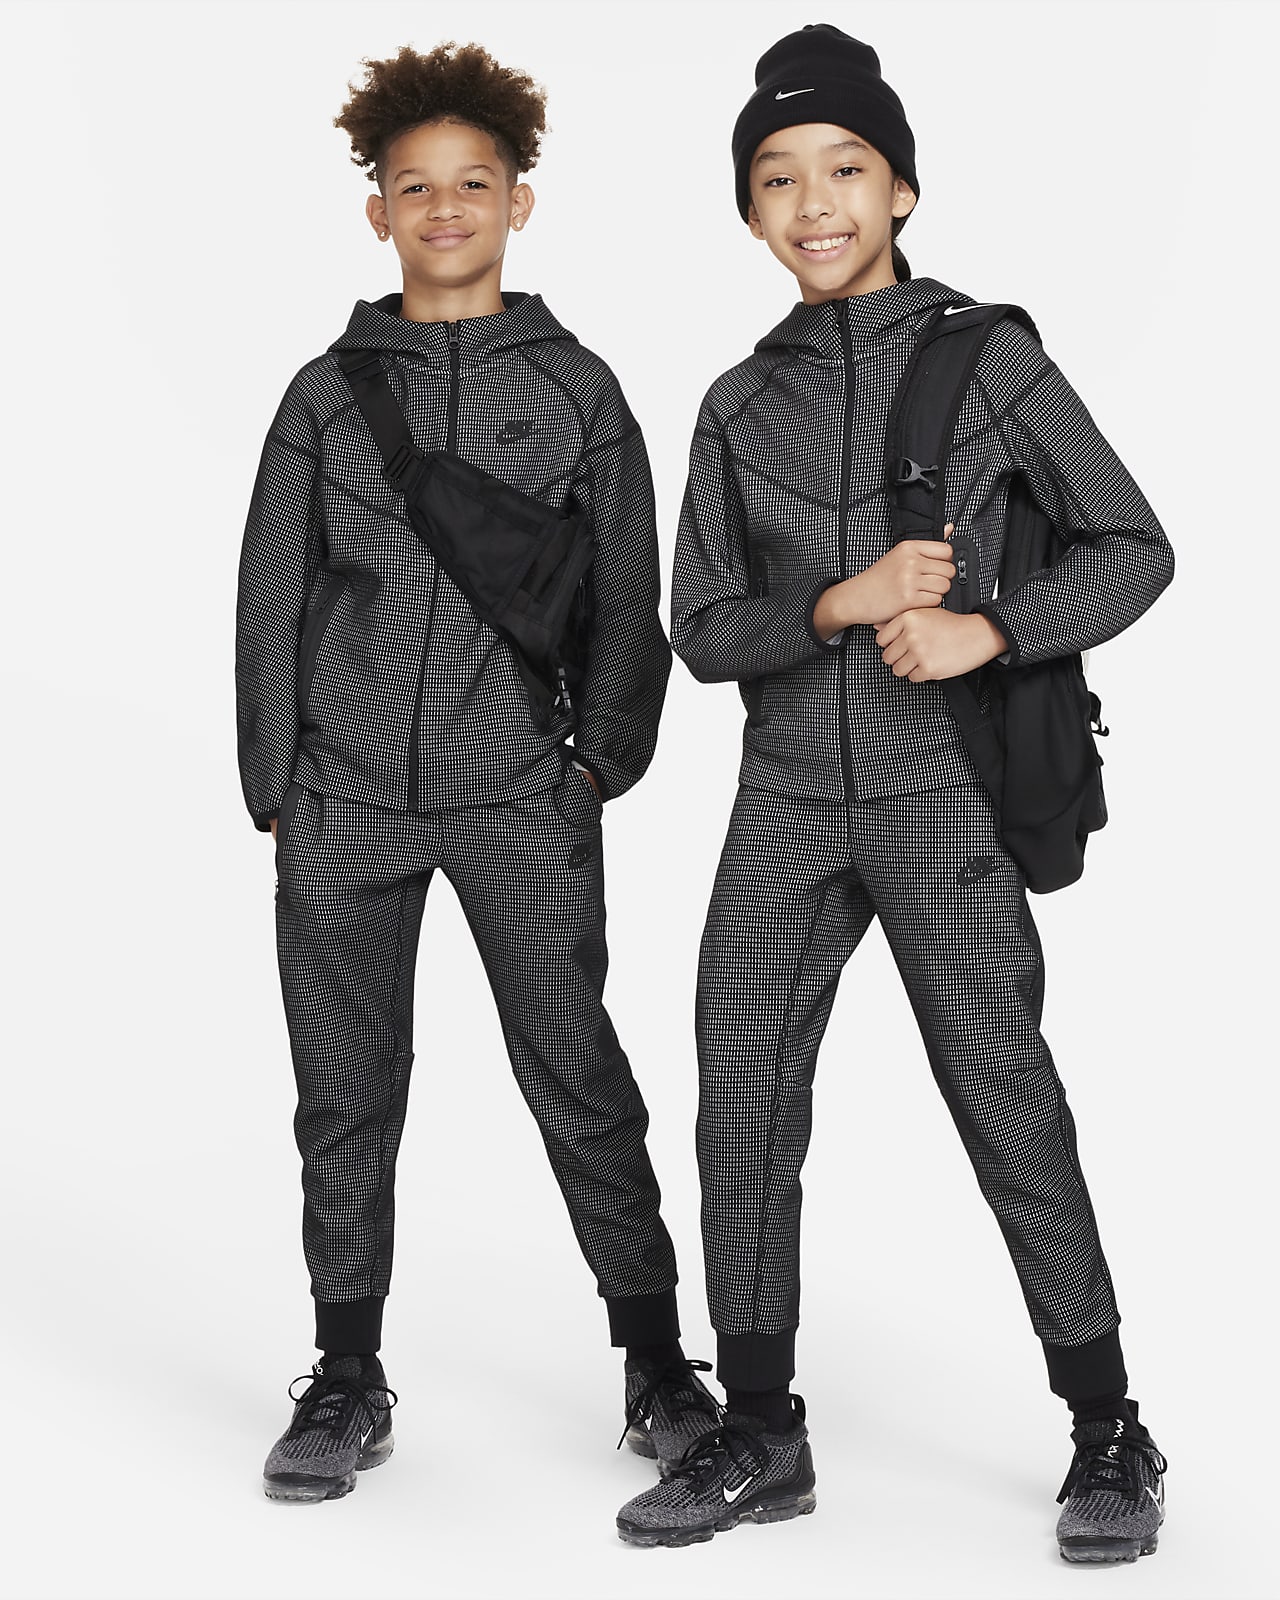  Nike Sportswear Tech Full Zip Fleece (Little Kids/Big